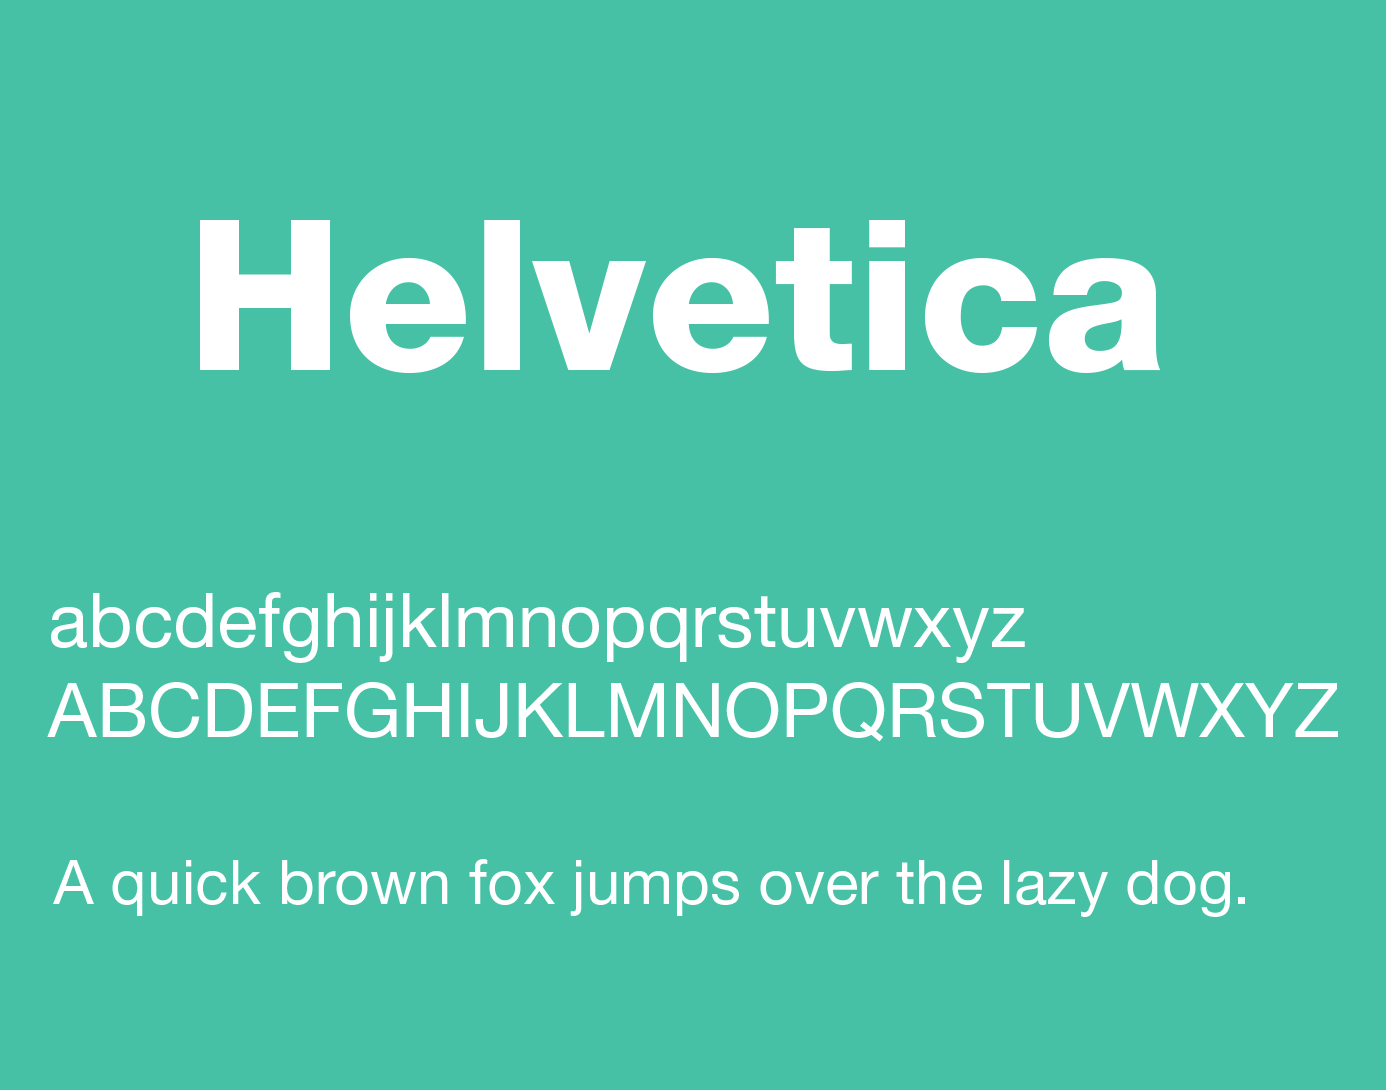 Helvetica Neue Download For Mac